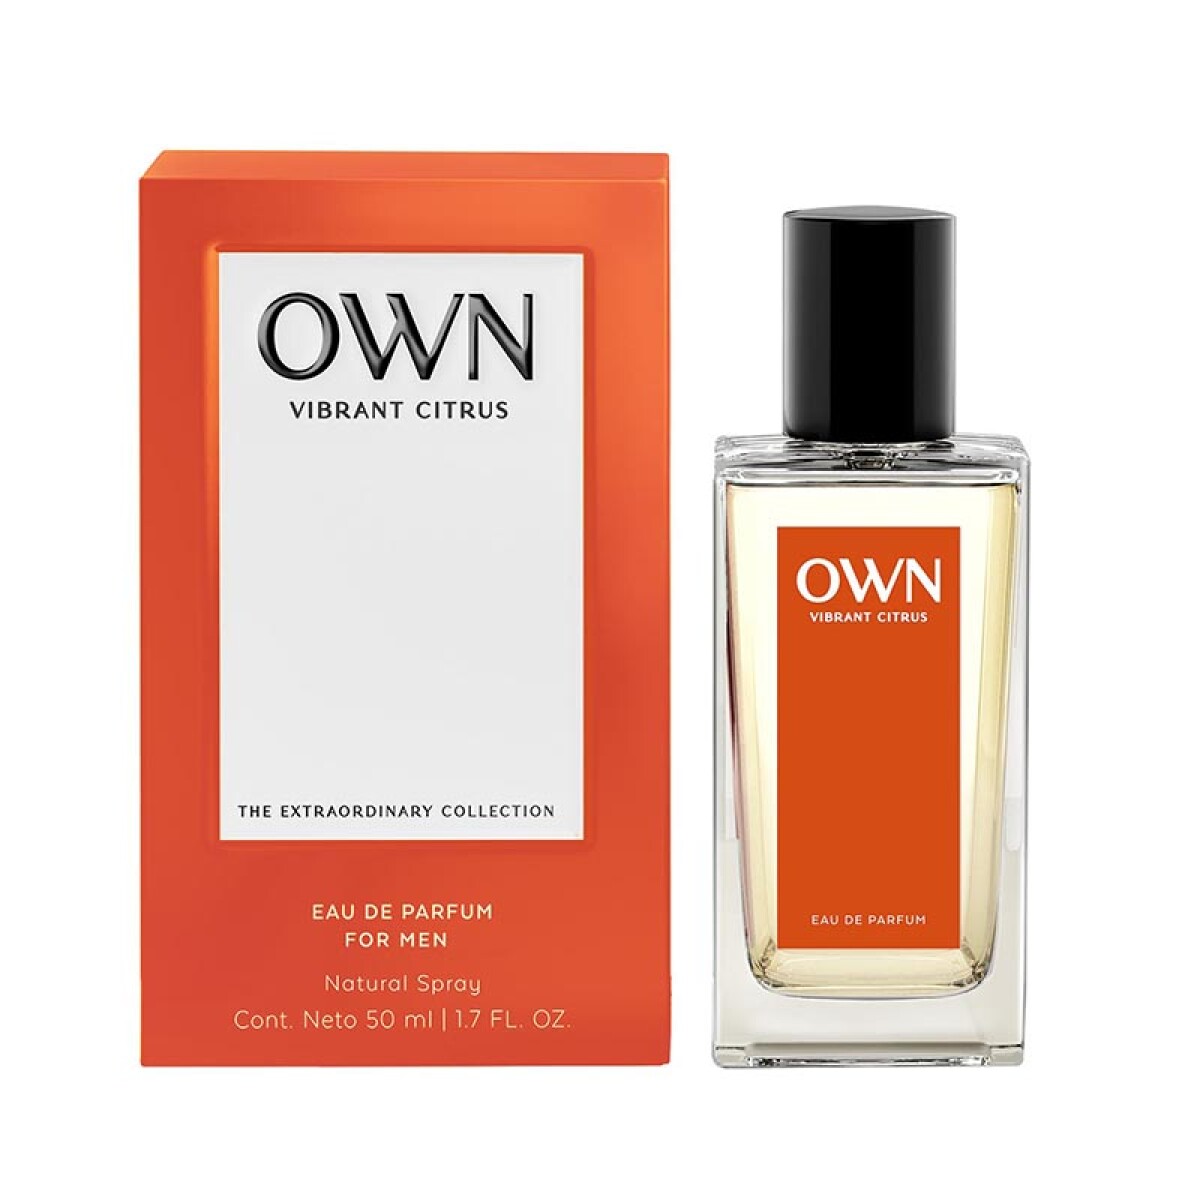 Own eau de parfum - Vibrant citrus 